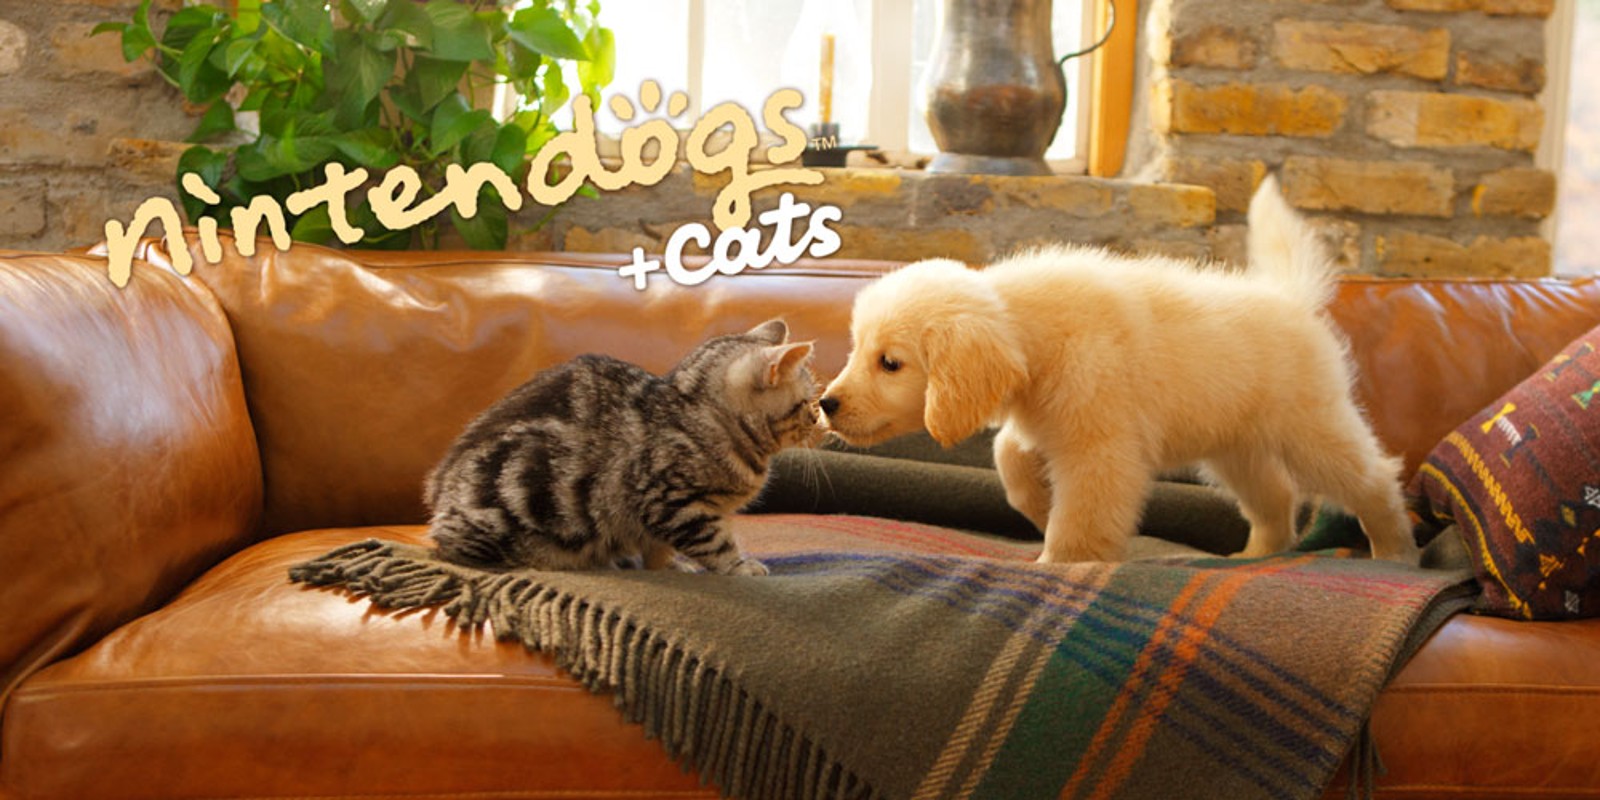 kort Anvendelse Klappe nintendogs + cats: Toy Poodle & New Friends | Nintendo 3DS games | Games |  Nintendo